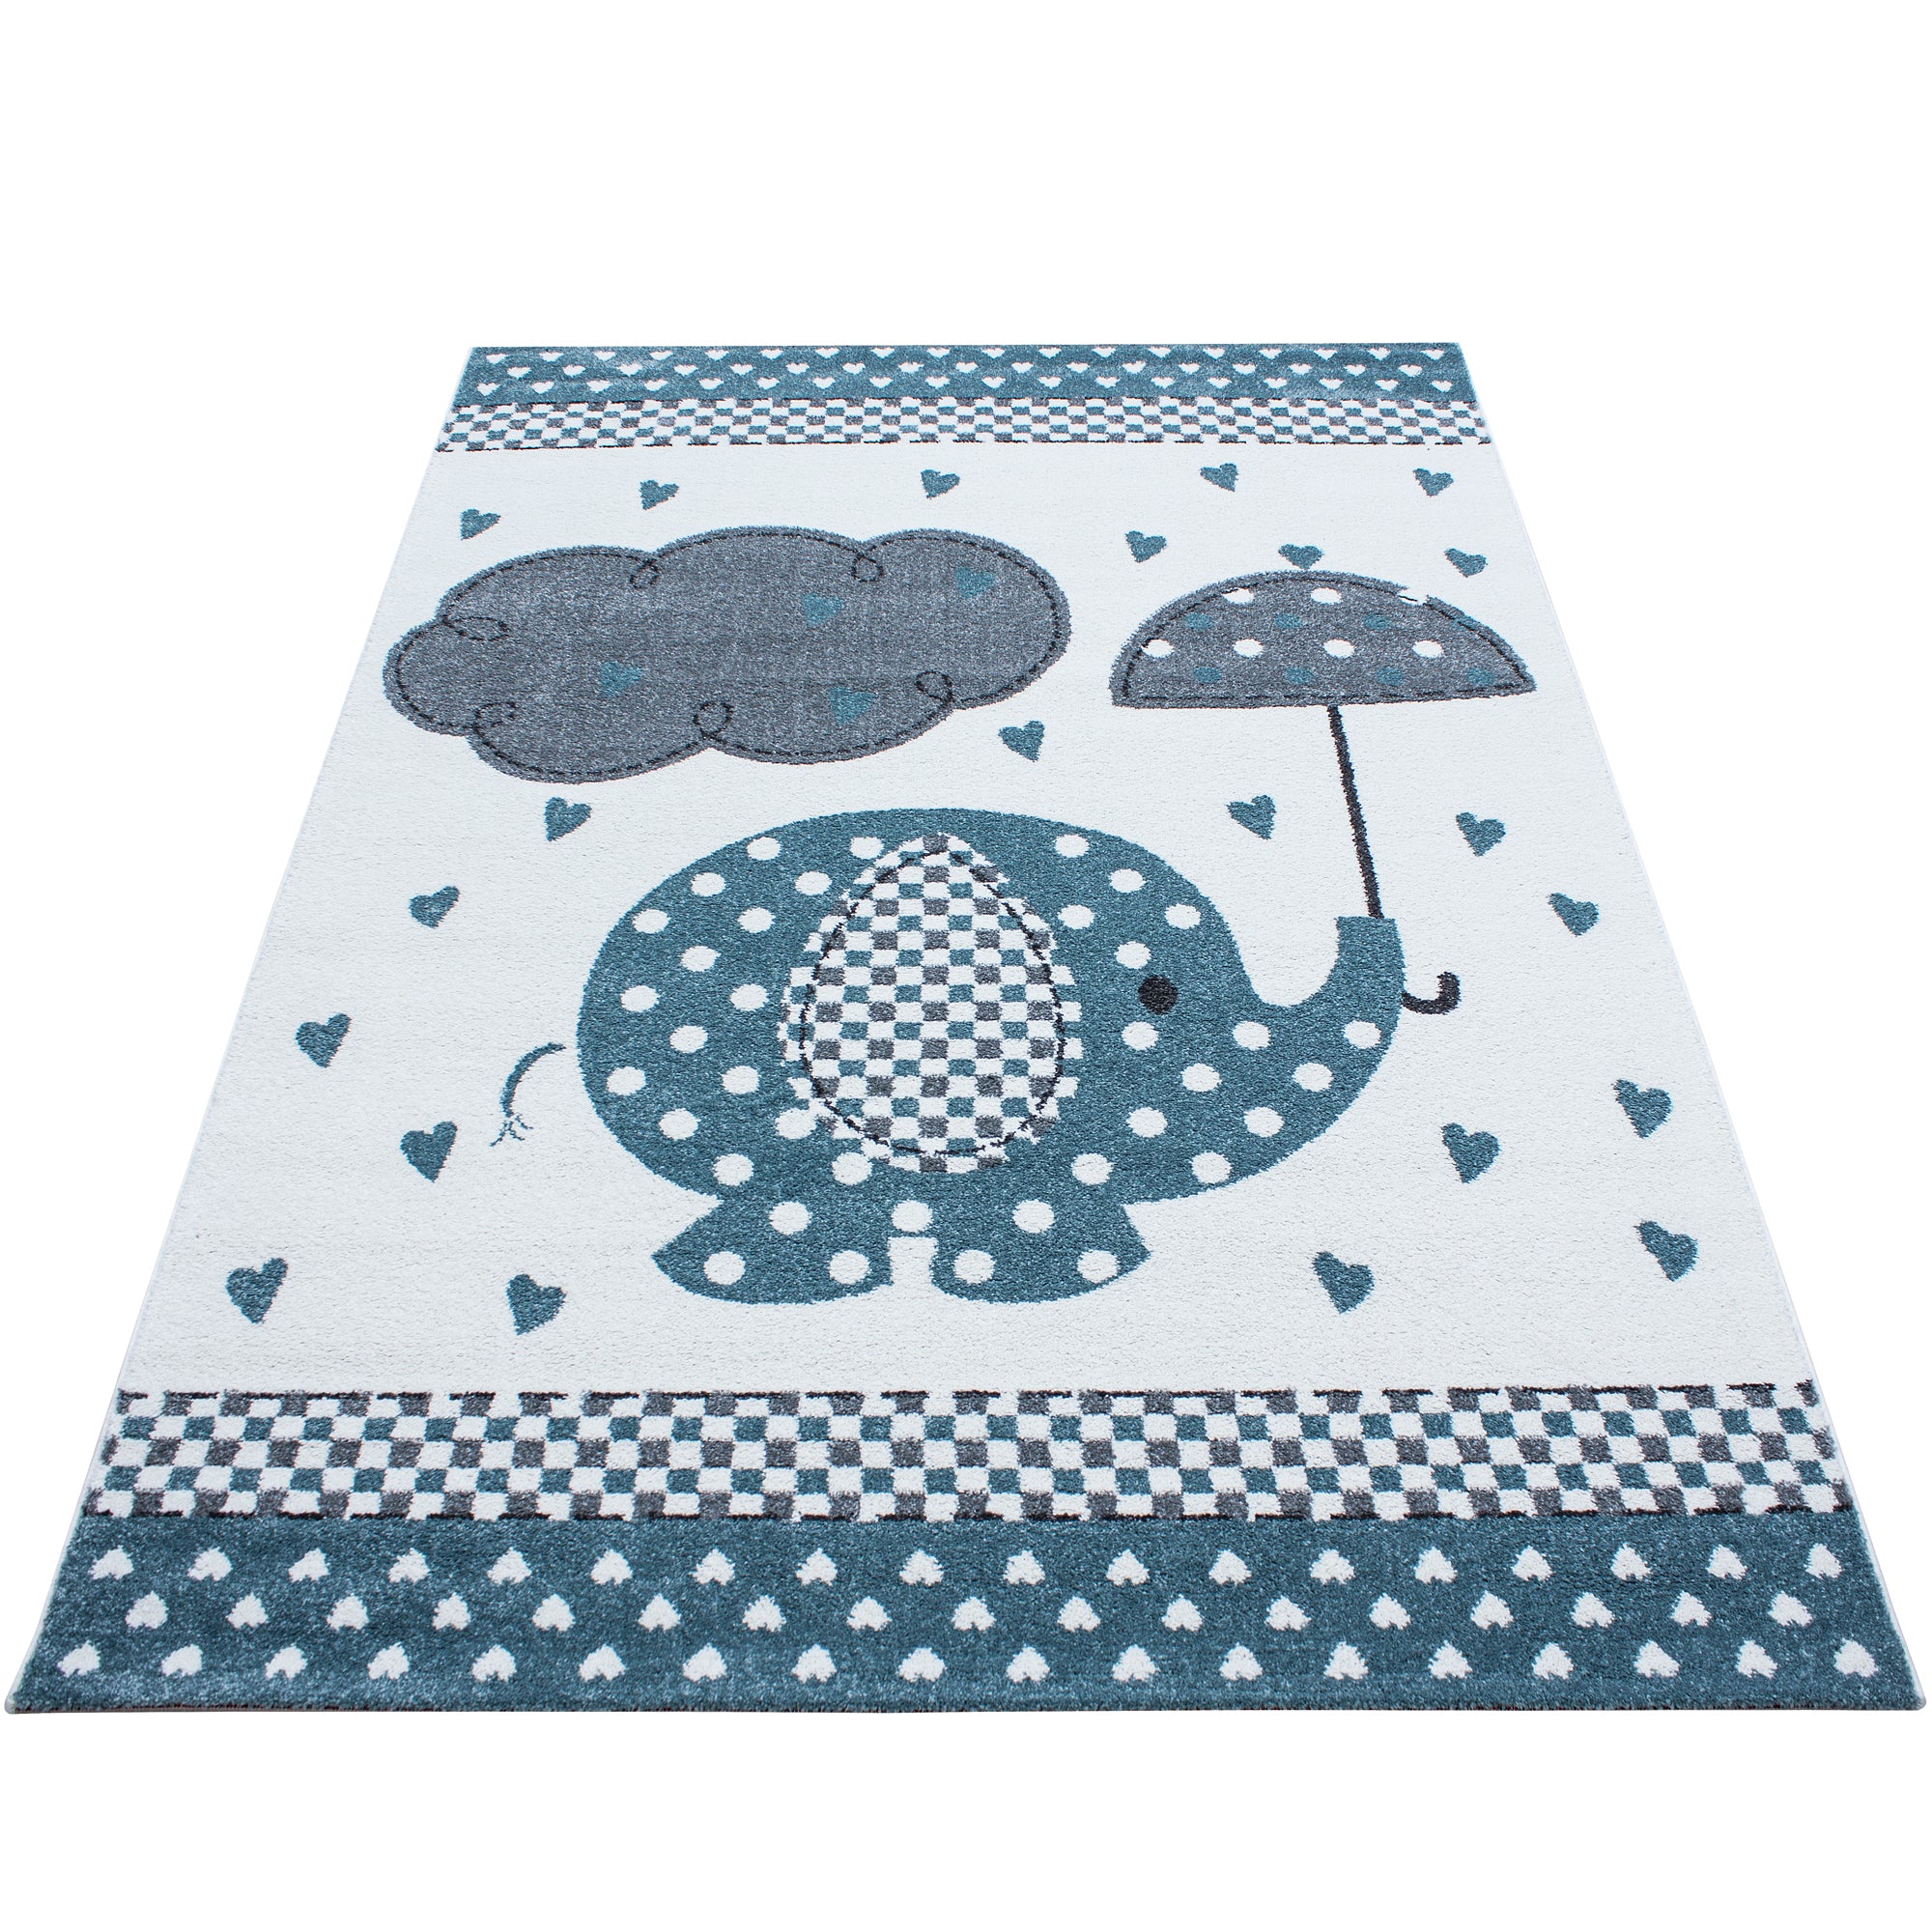 Kurzflor Kinderteppich Elefant mit Regenschirm Babyzimmer Teppich Grau Blau